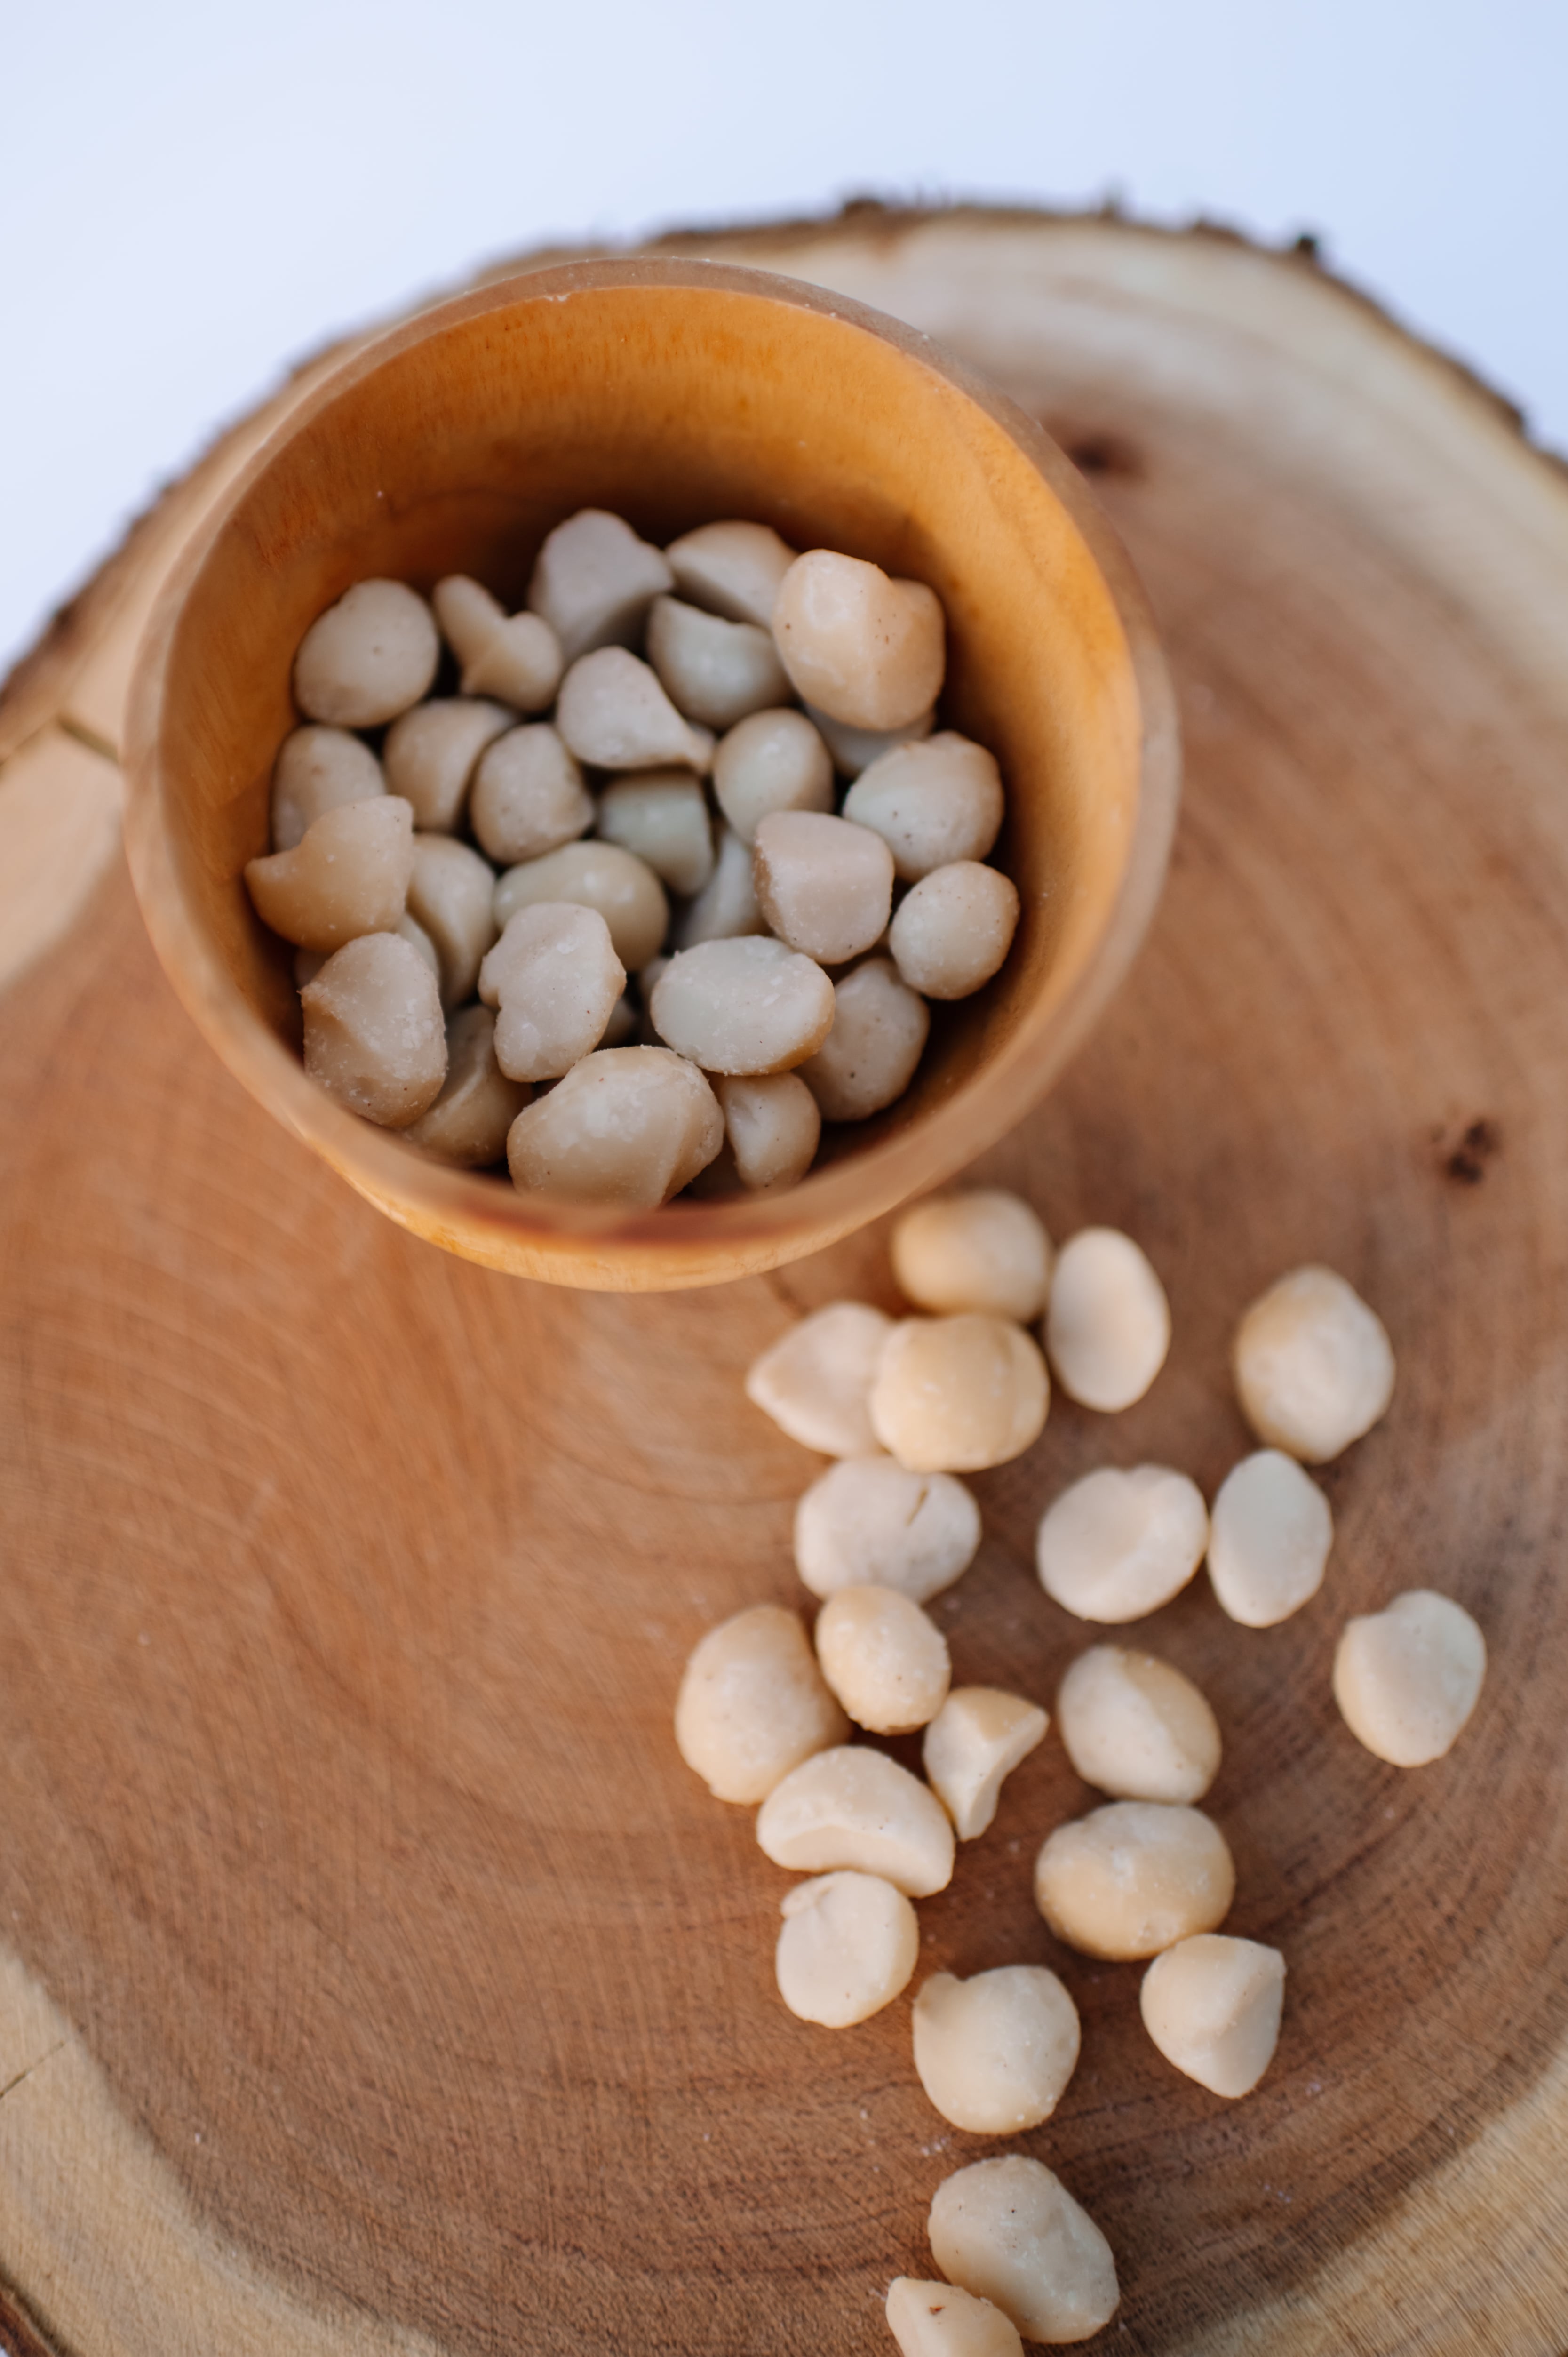 Unroasted Macadamia Nuts (1 kg/2.2 lbs)